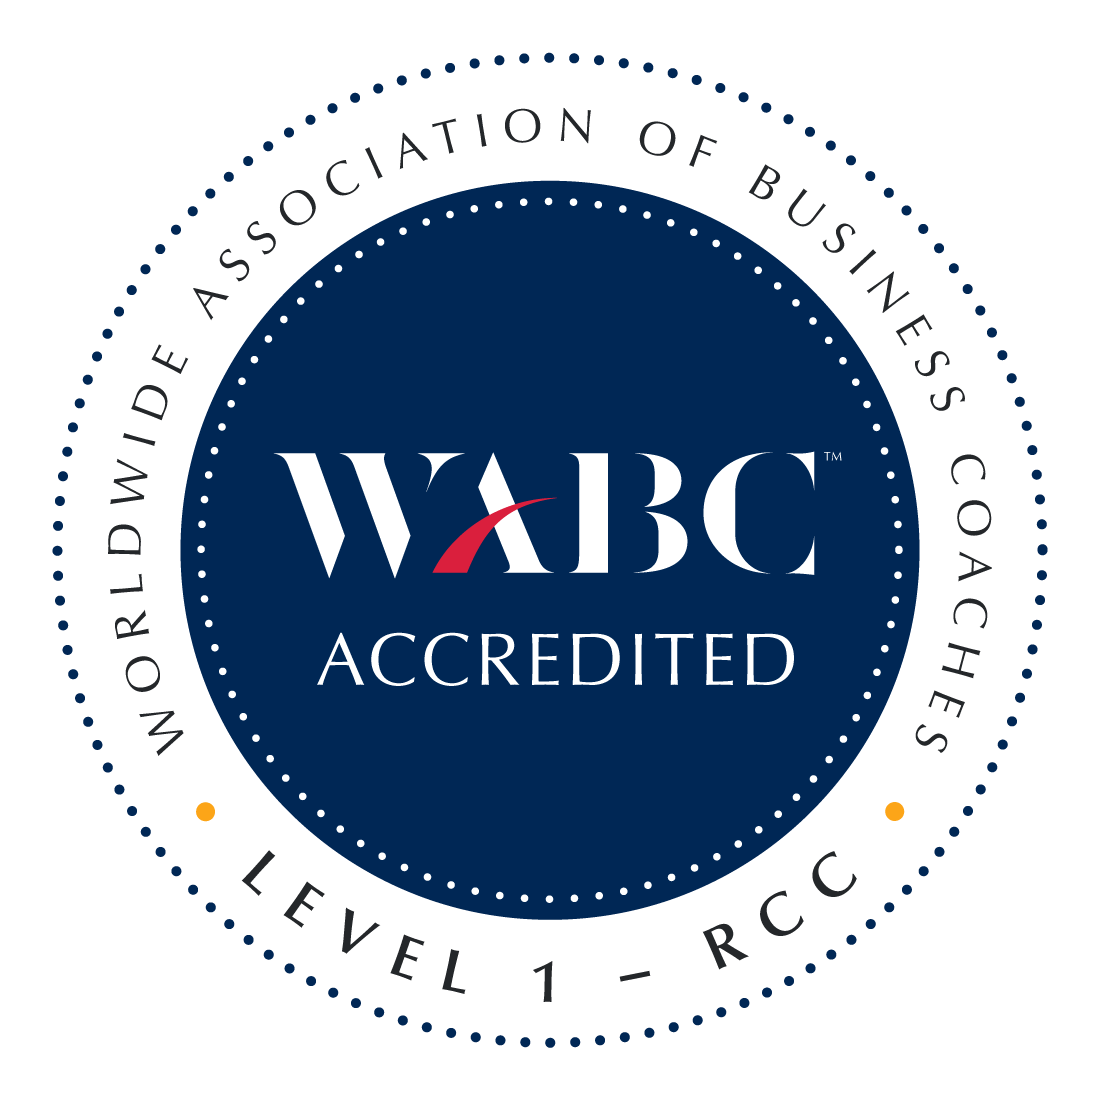 wabc accredited logo